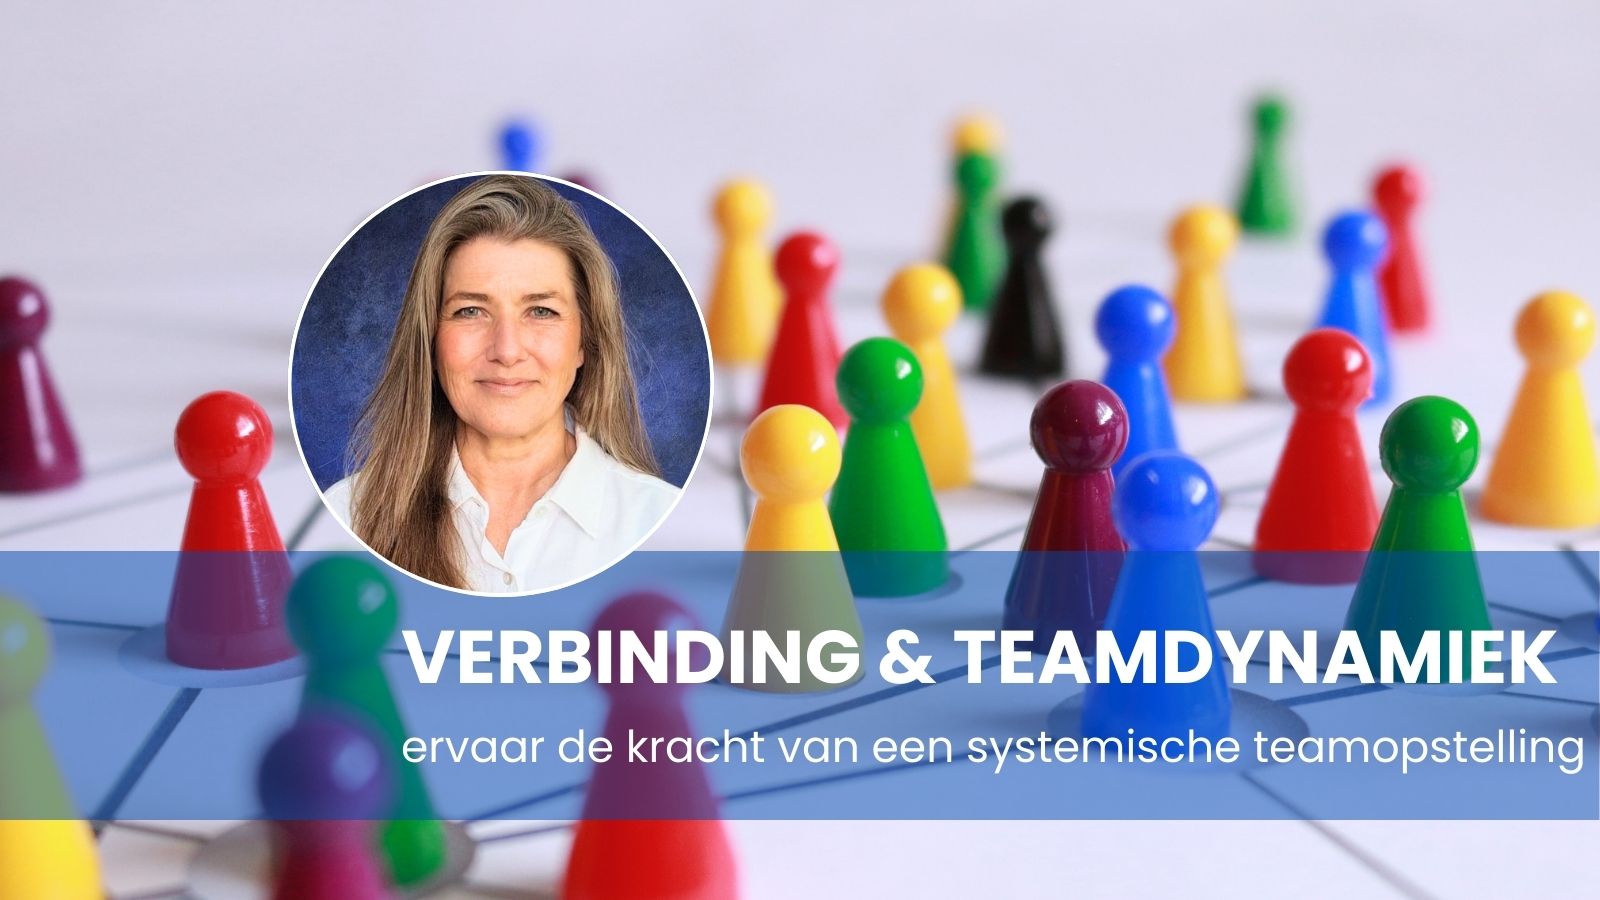 Groningen: Systemische teamopstelling